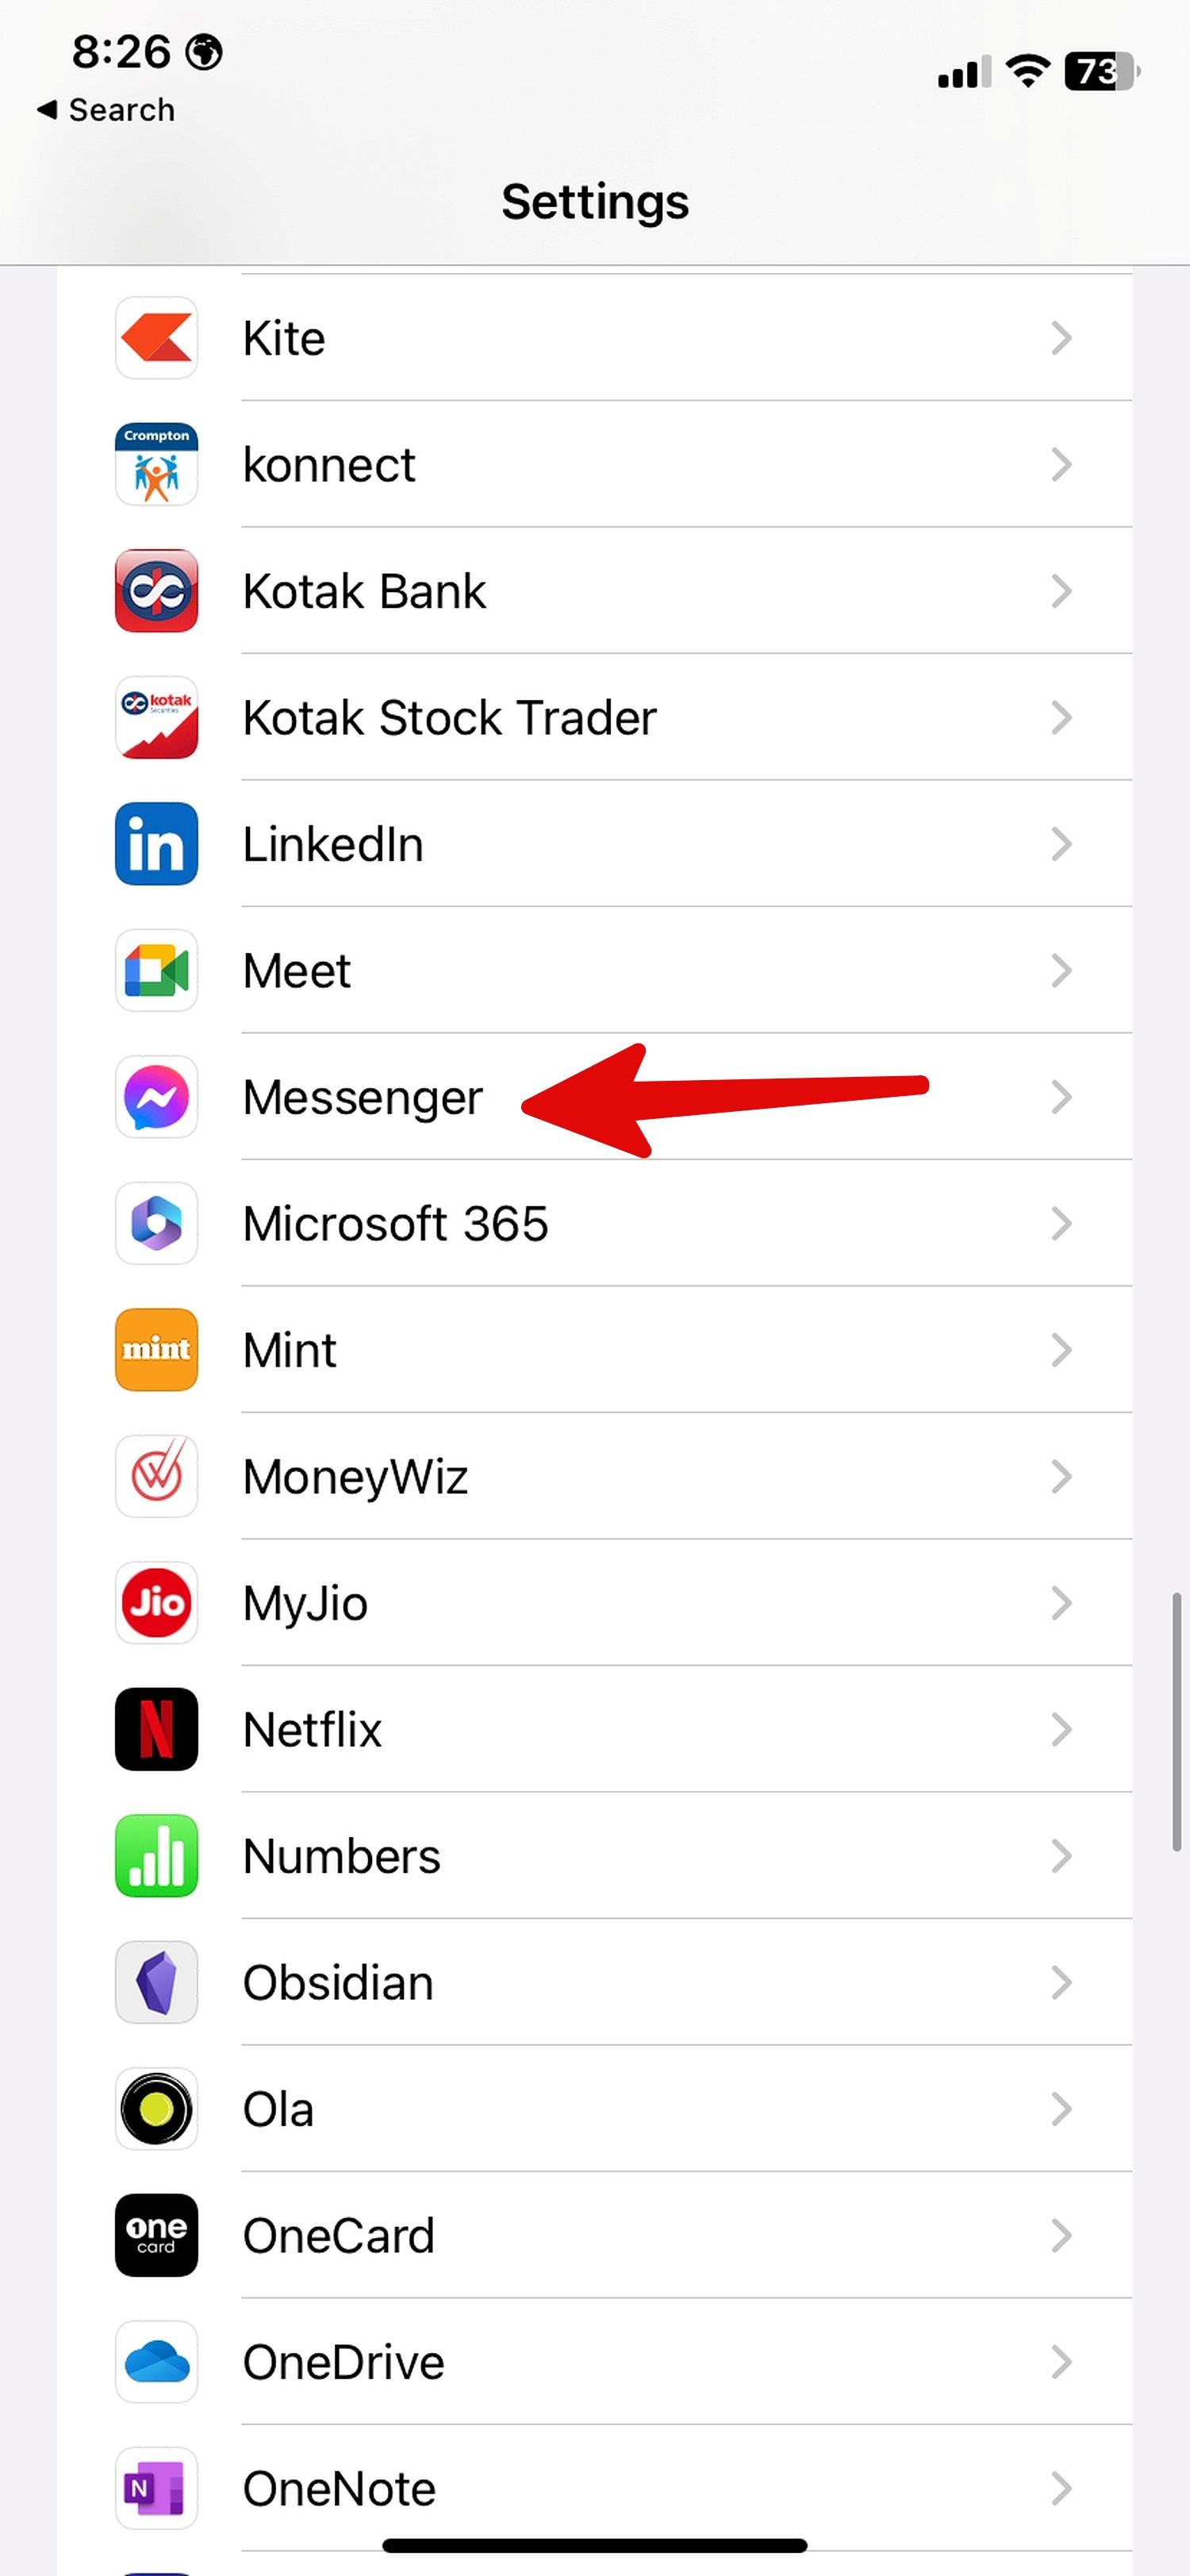 Abra o aplicativo Messenger